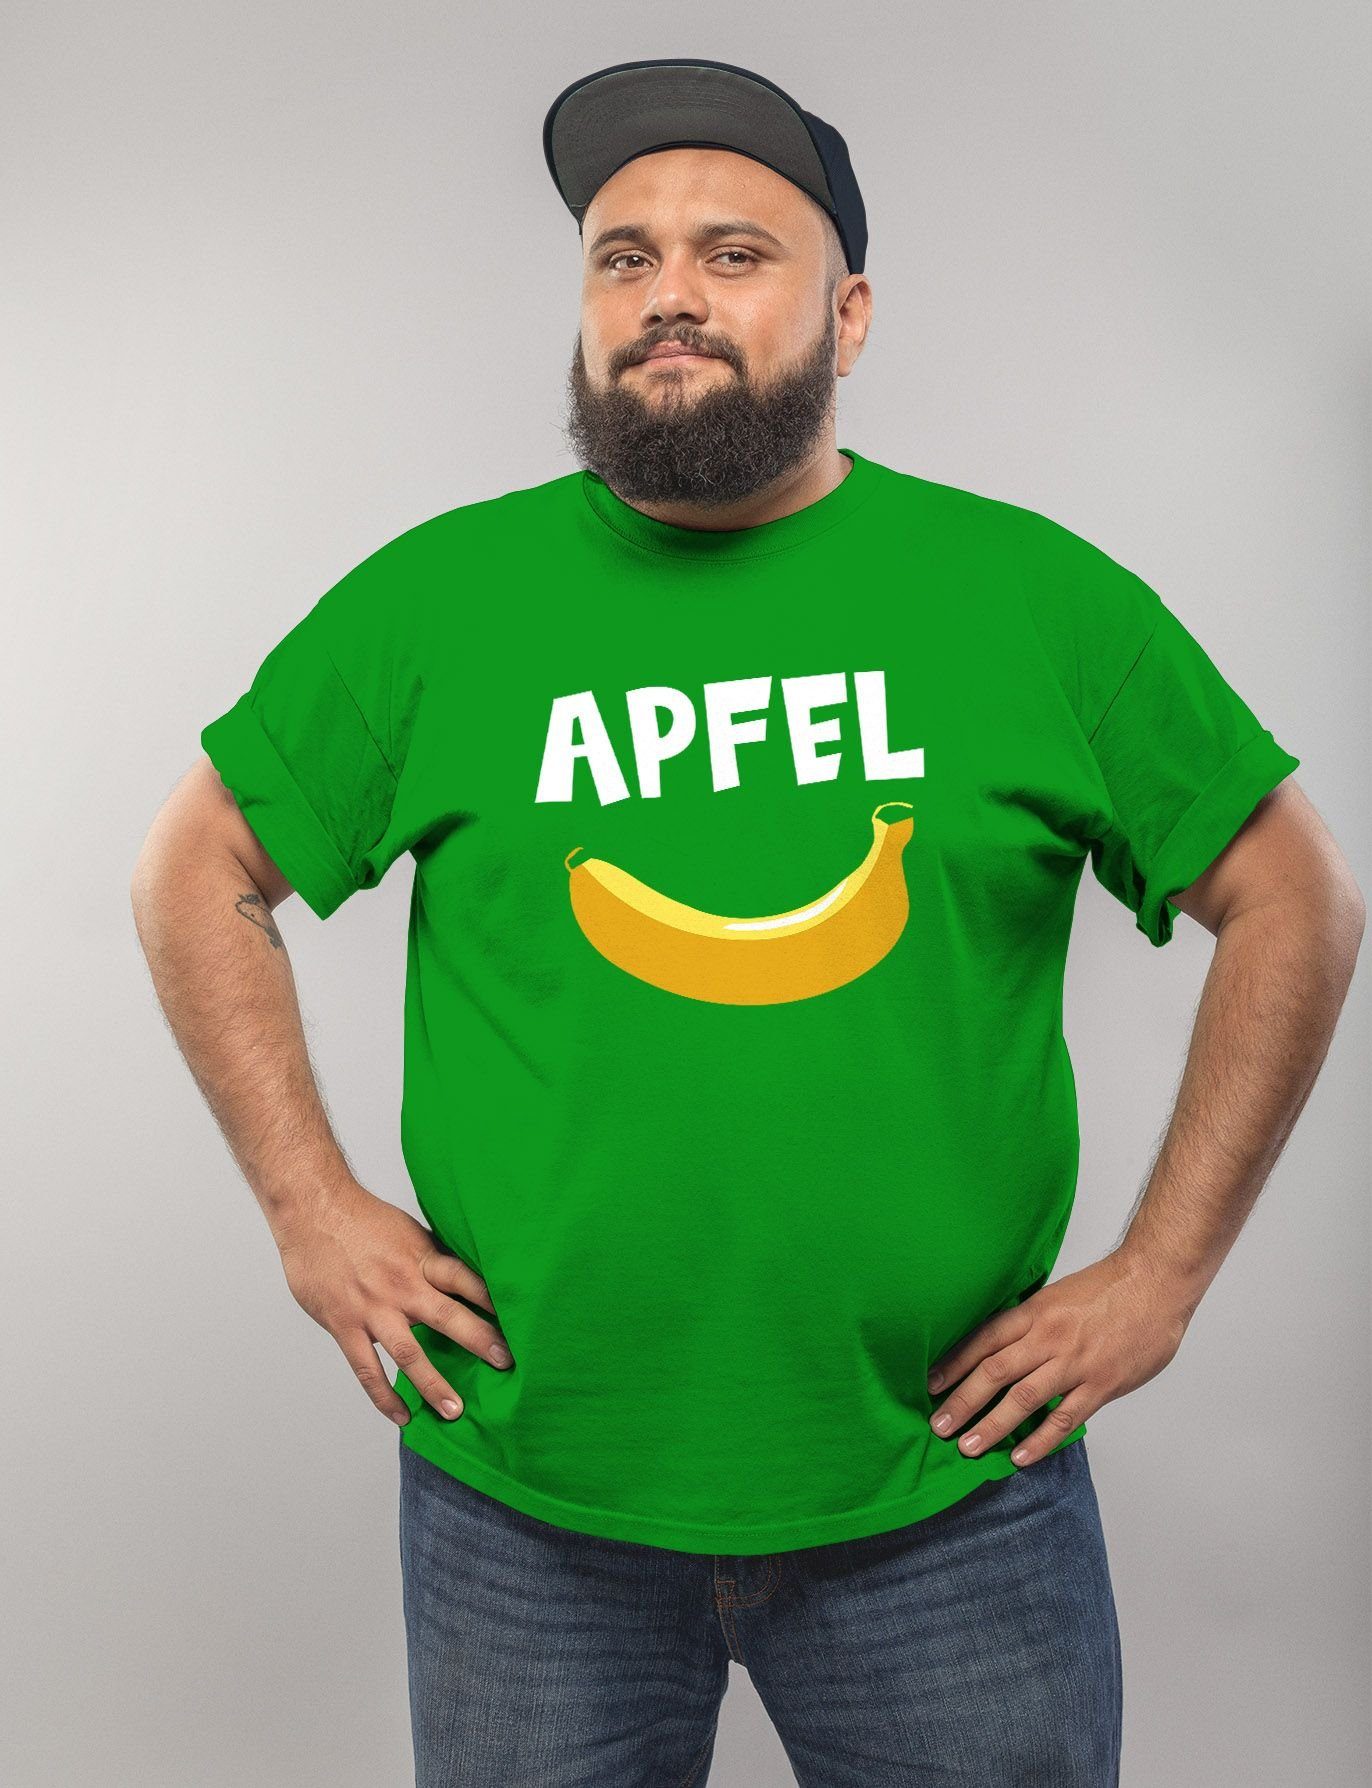 MoonWorks T-Shirt Apfel Banane Spruch Fun-Shirt mit Moonworks® Scherz Witz Herren lustiger Print-Shirt Aufdruck lustig grün Print